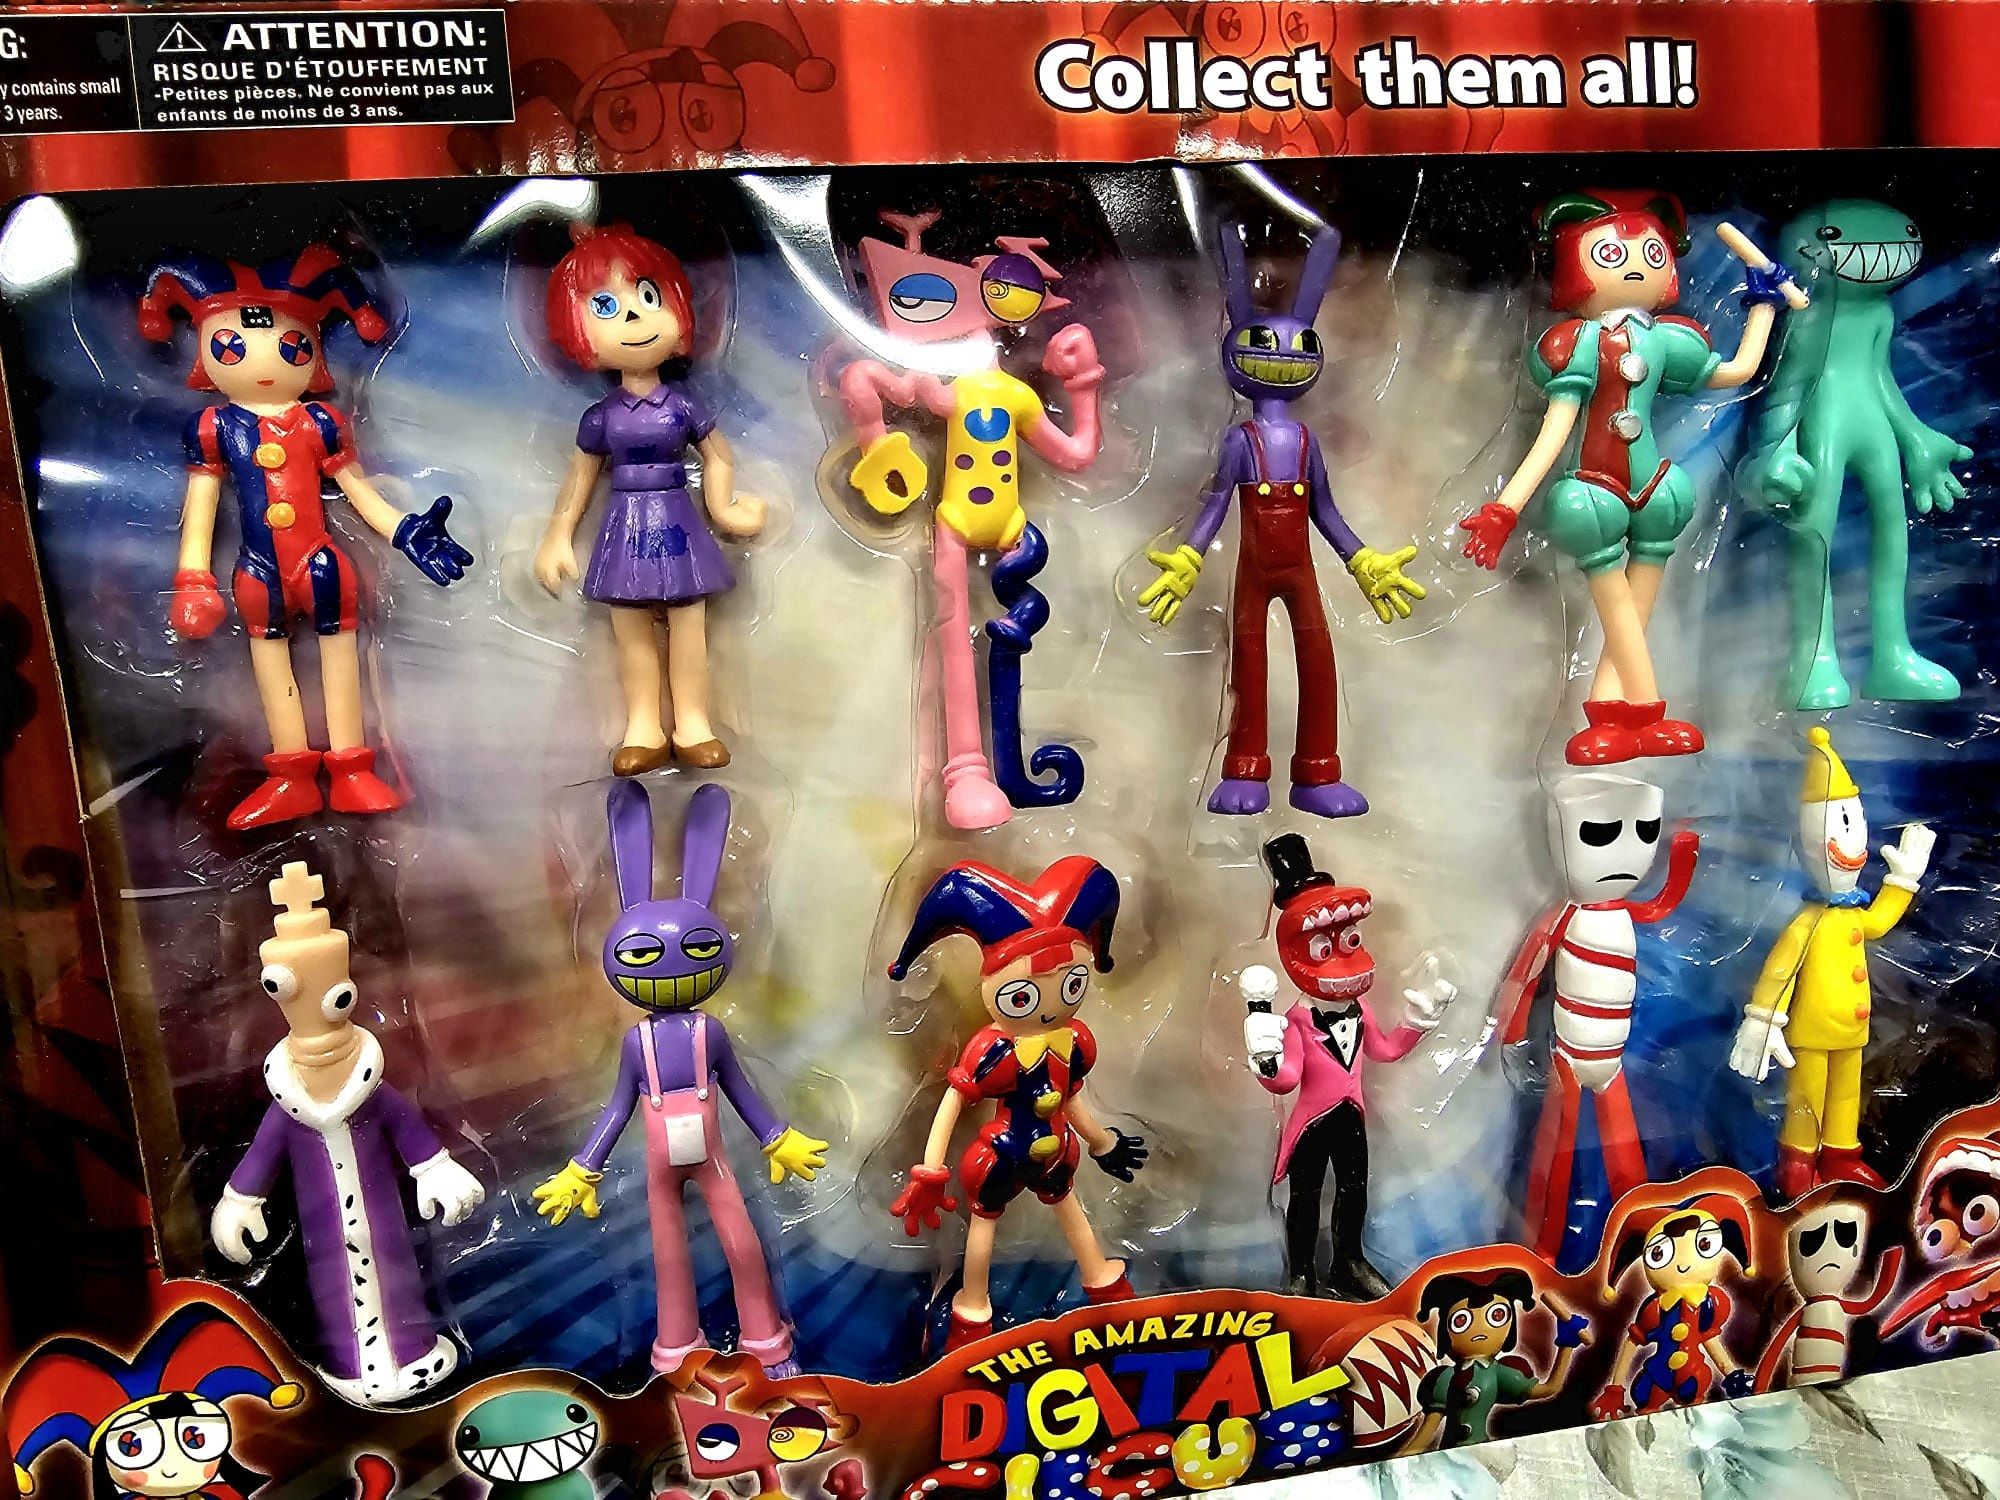 Nowy zestaw figurek figurki The Amazing Digital Circus - zabawki